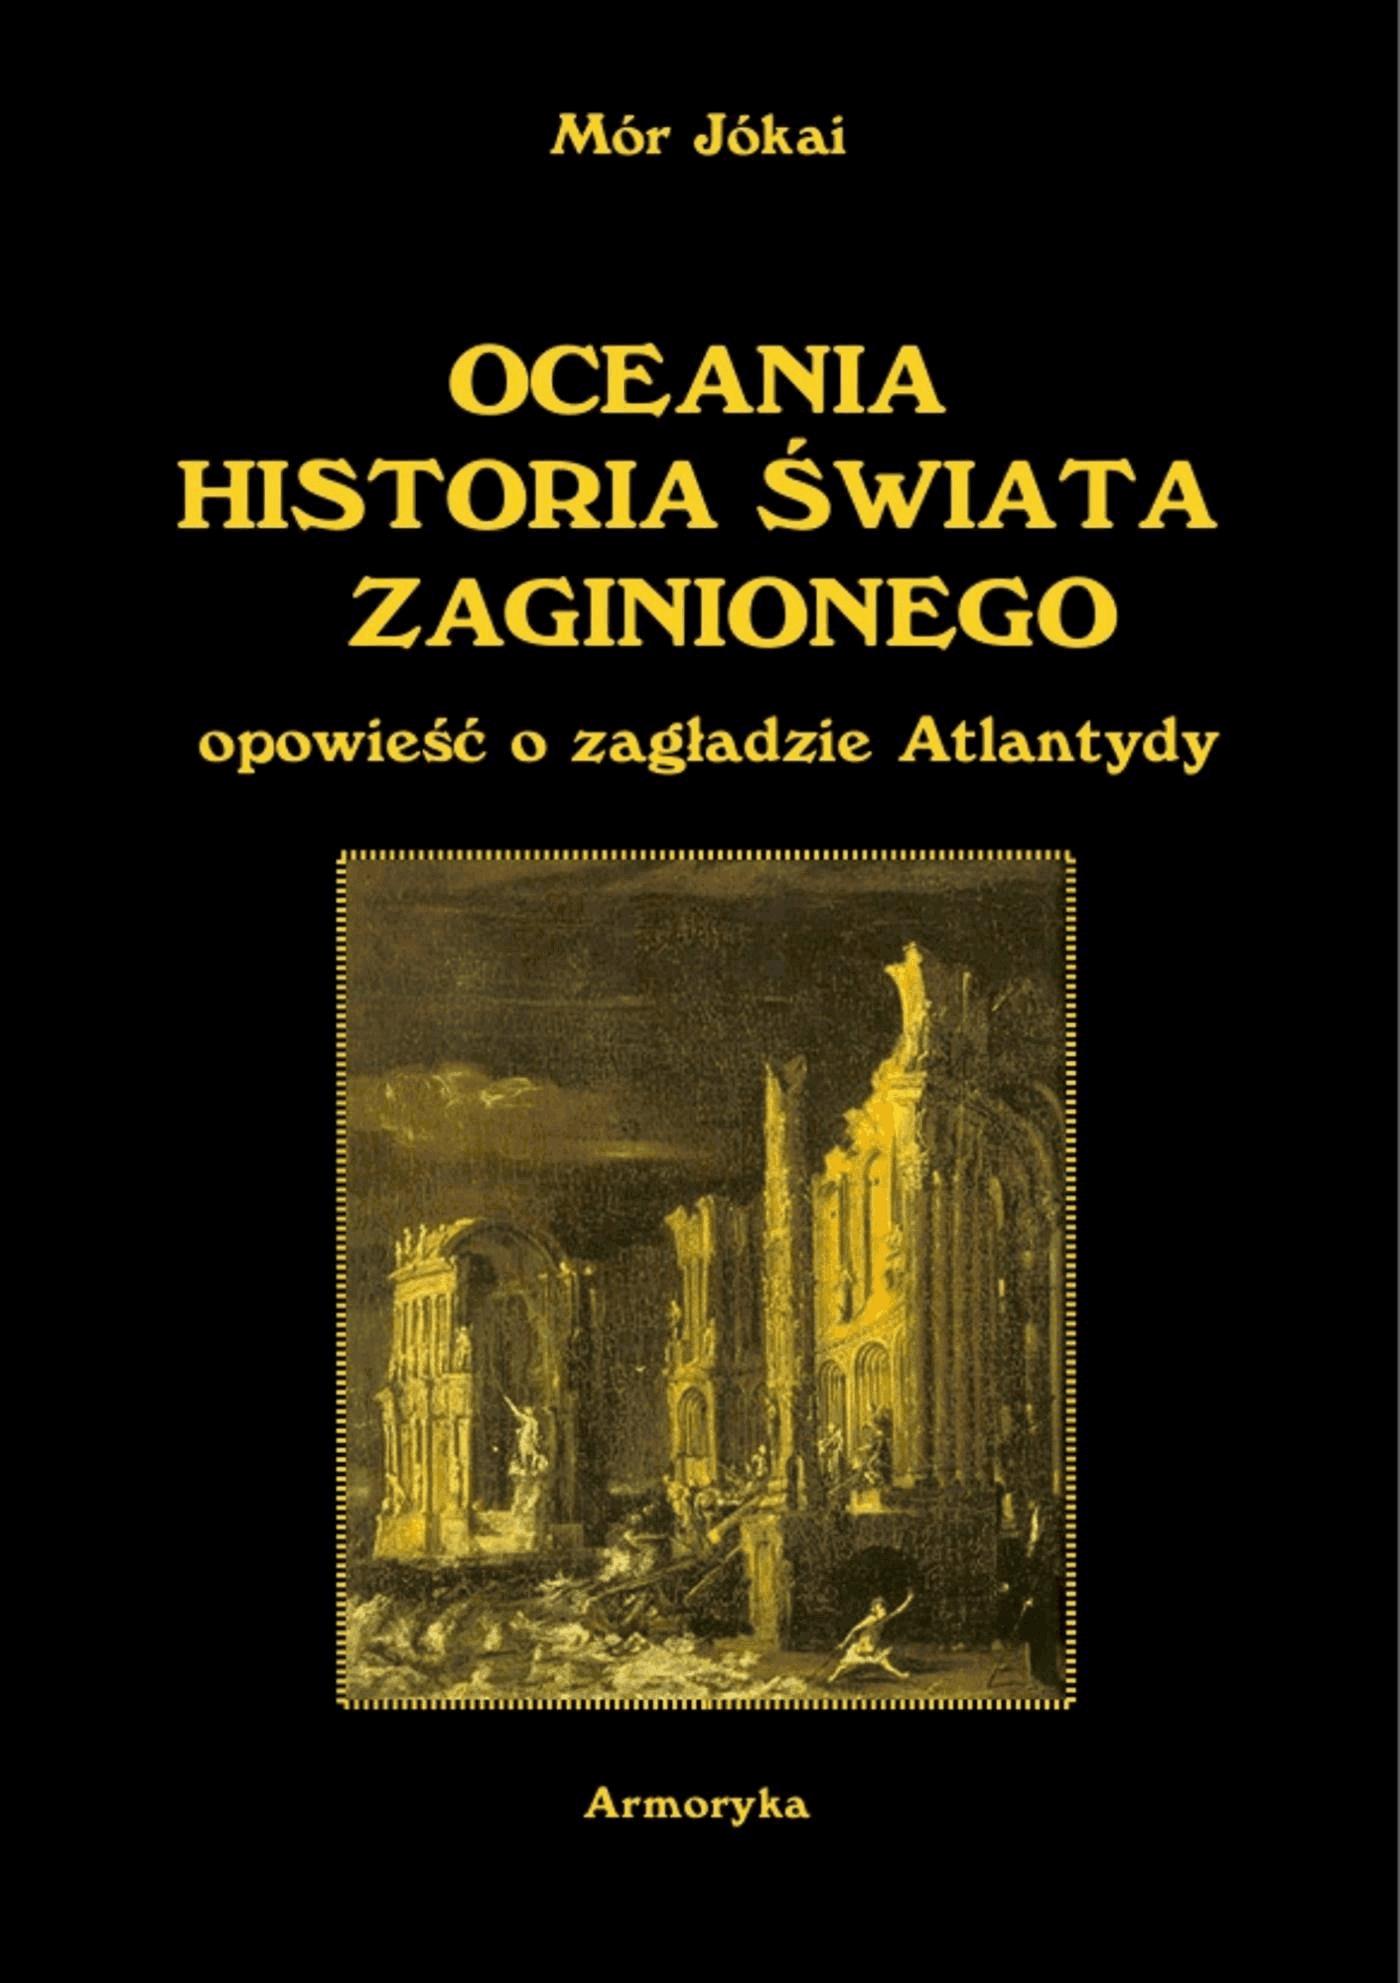 Okładka:Oceania historia świata zaginionego. Opowieść o zagładzie Atlantydy 